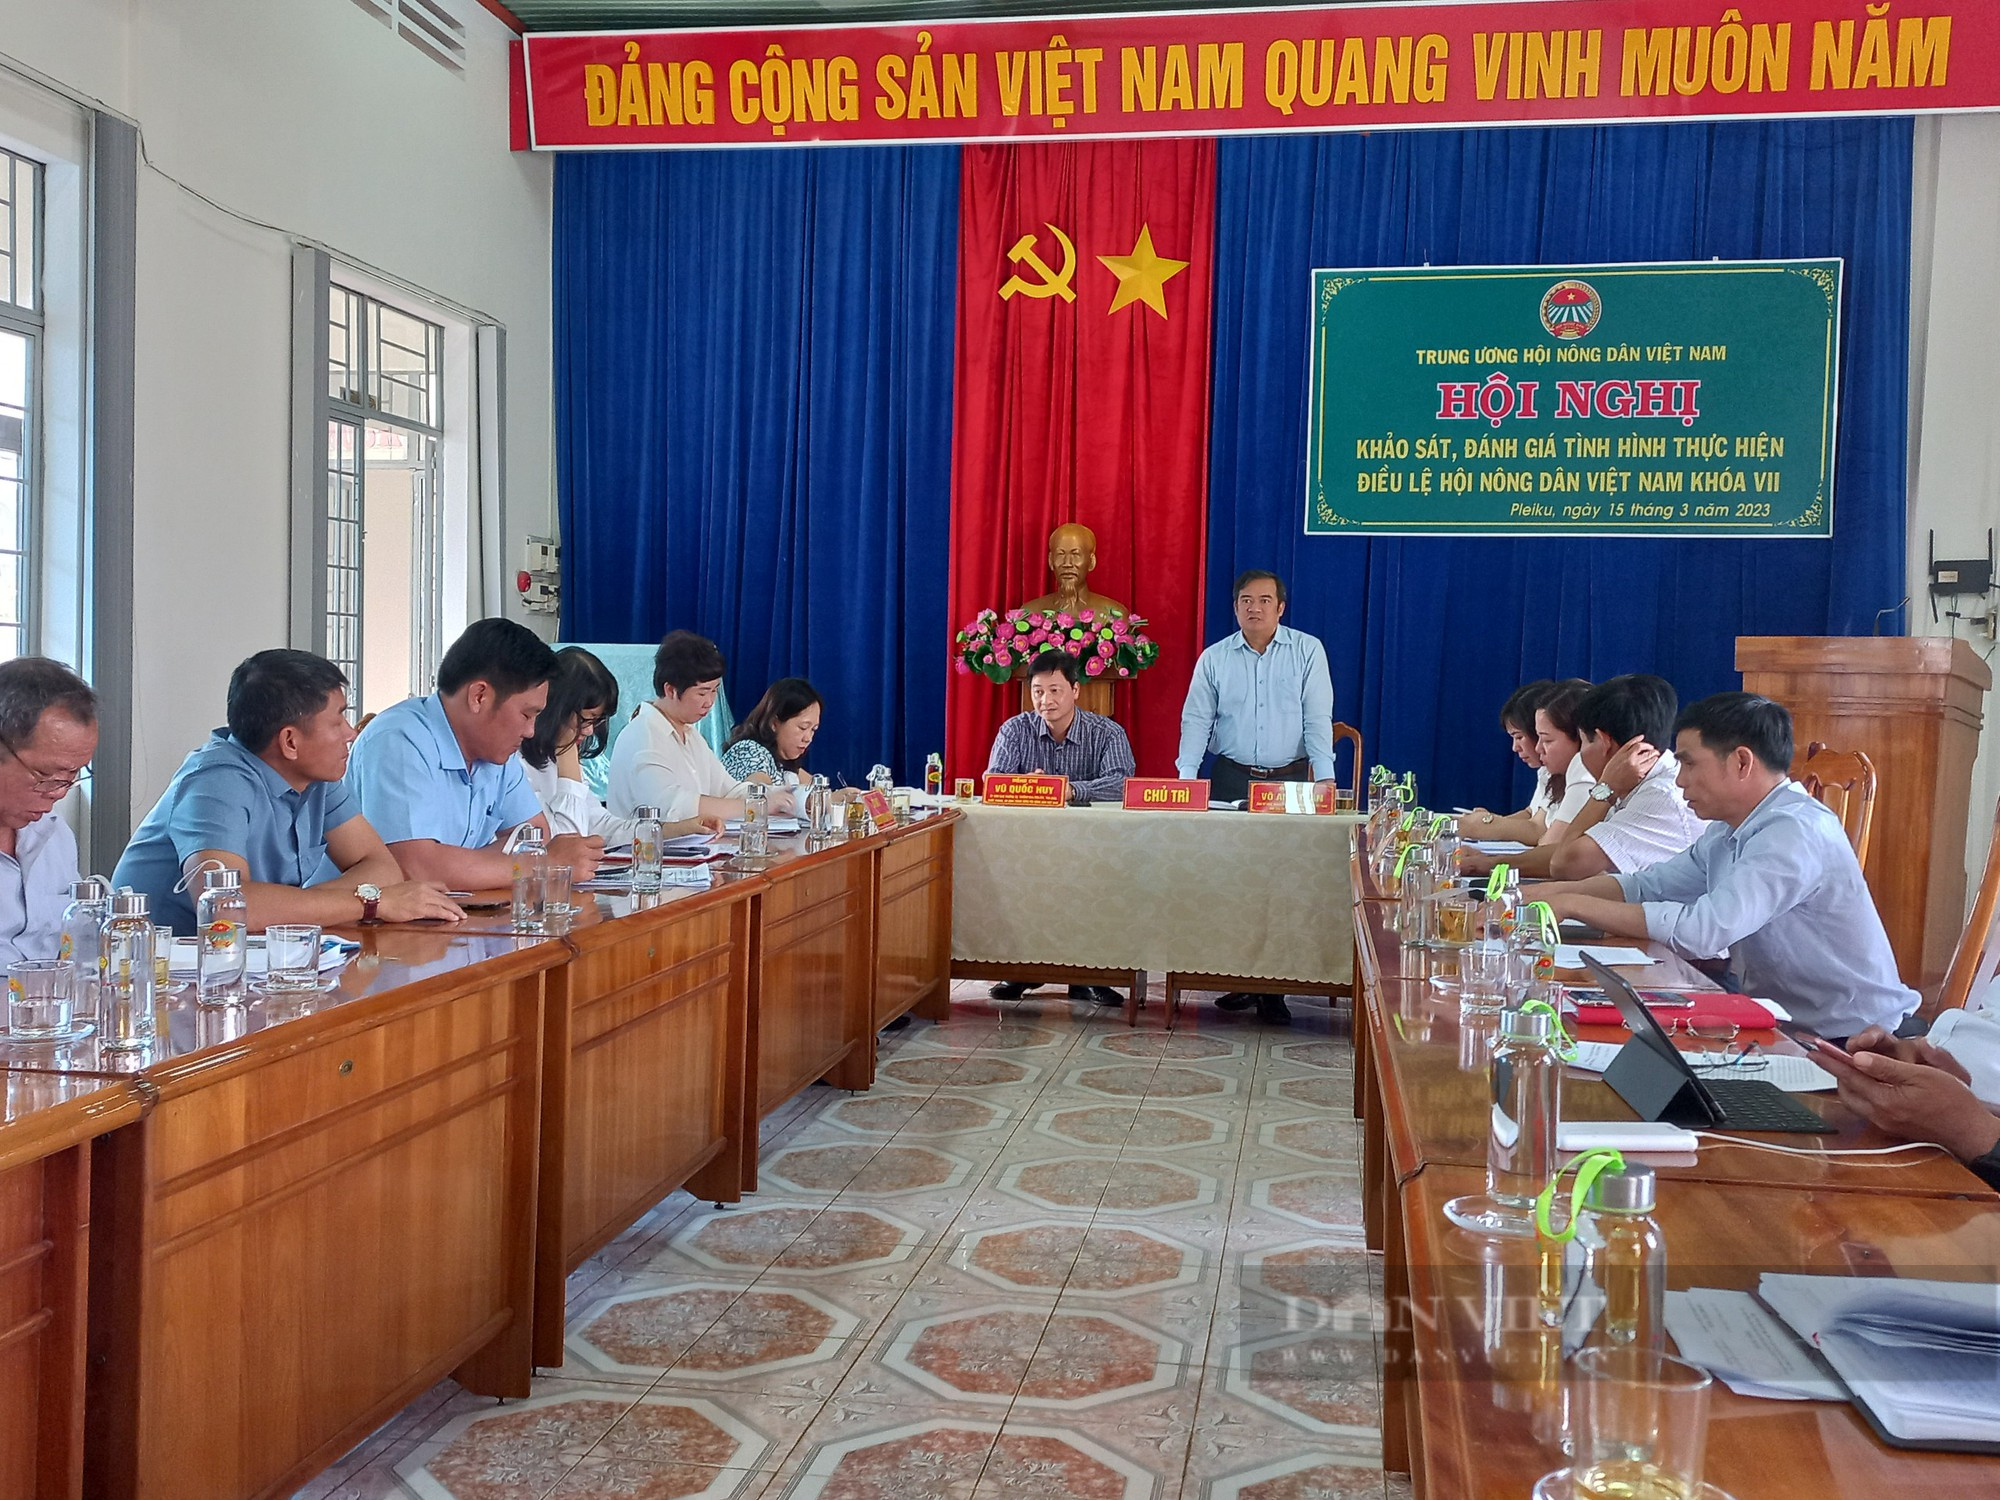 Hội Nông dân Việt Nam khảo sát việc thực hiện Điều lệ Hội Nông dân khoá VII tại Gia Lai - Ảnh 1.